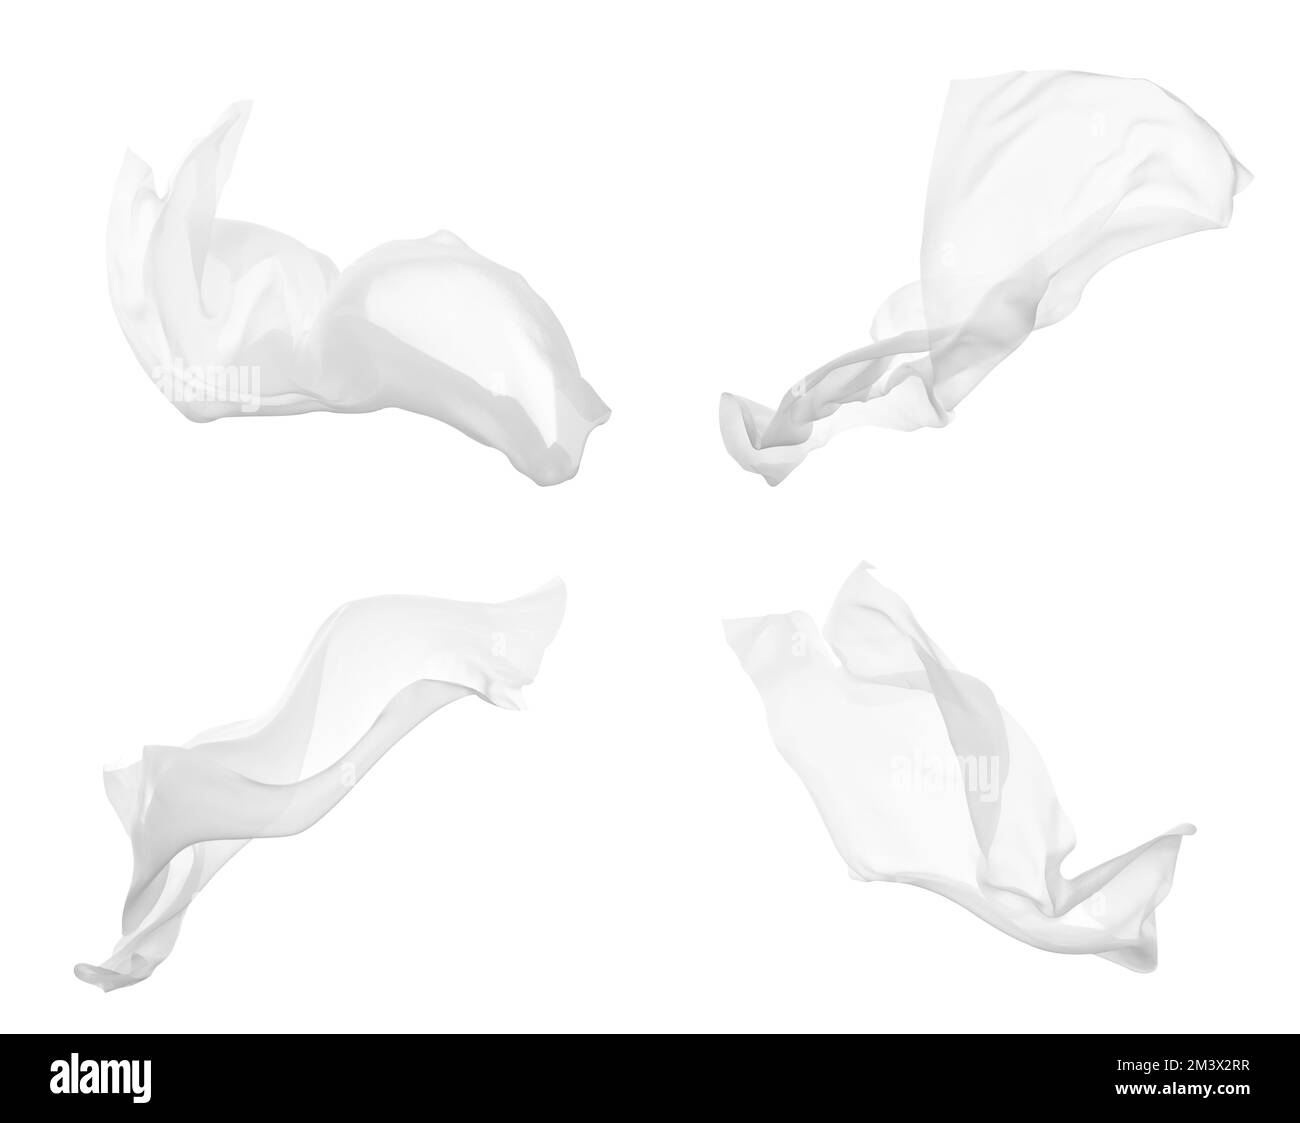 Foulard blanc Banque d'images noir et blanc - Alamy